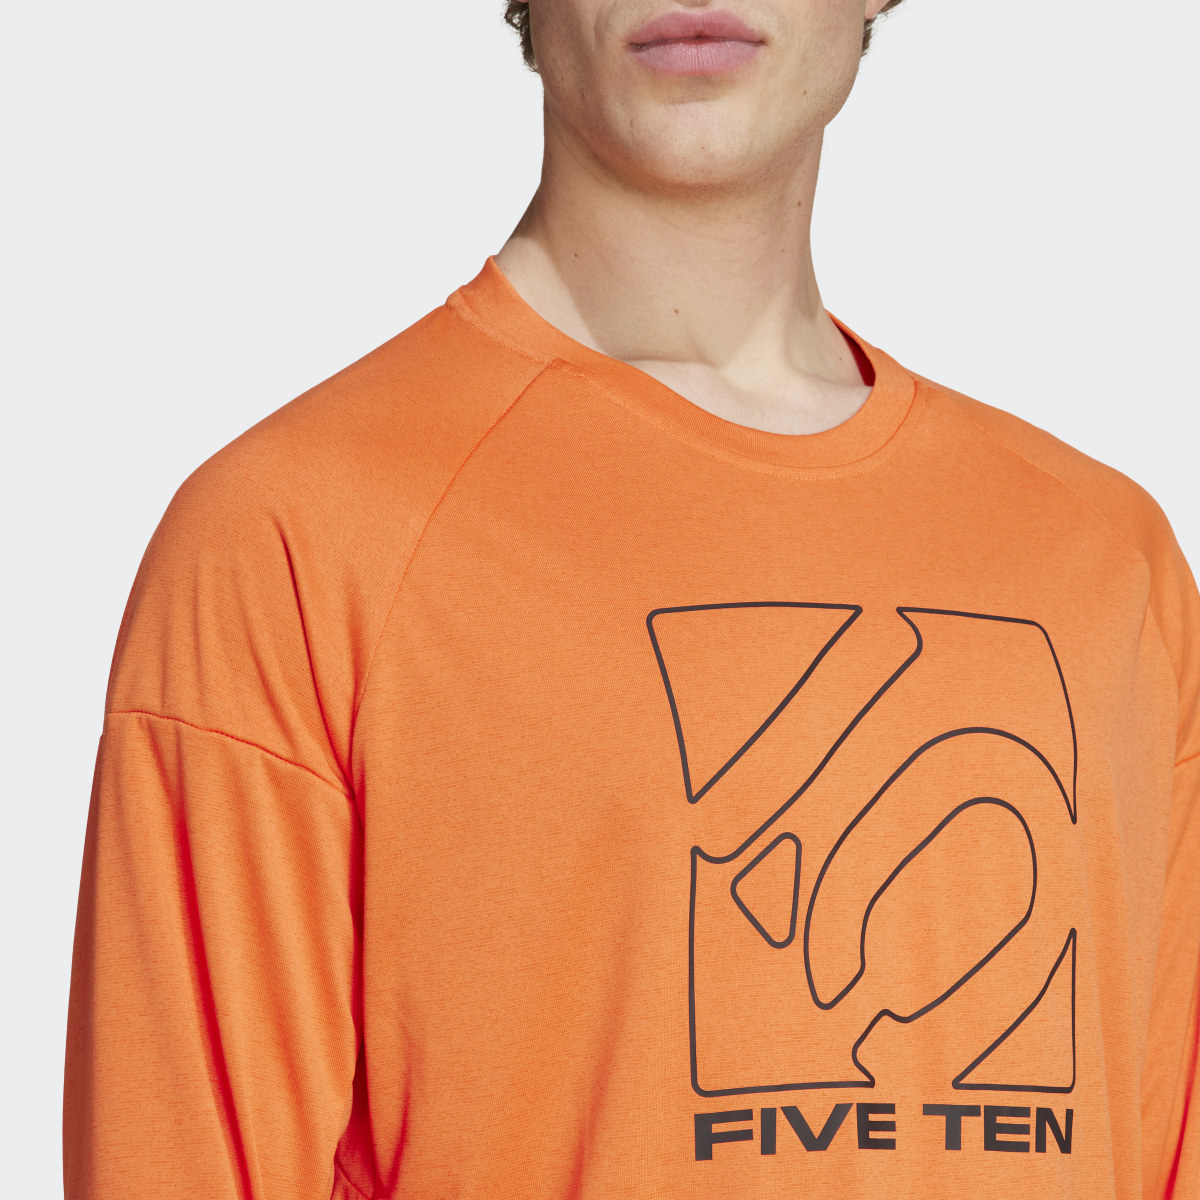 Adidas Five Ten Long Sleeve Jersey. 6